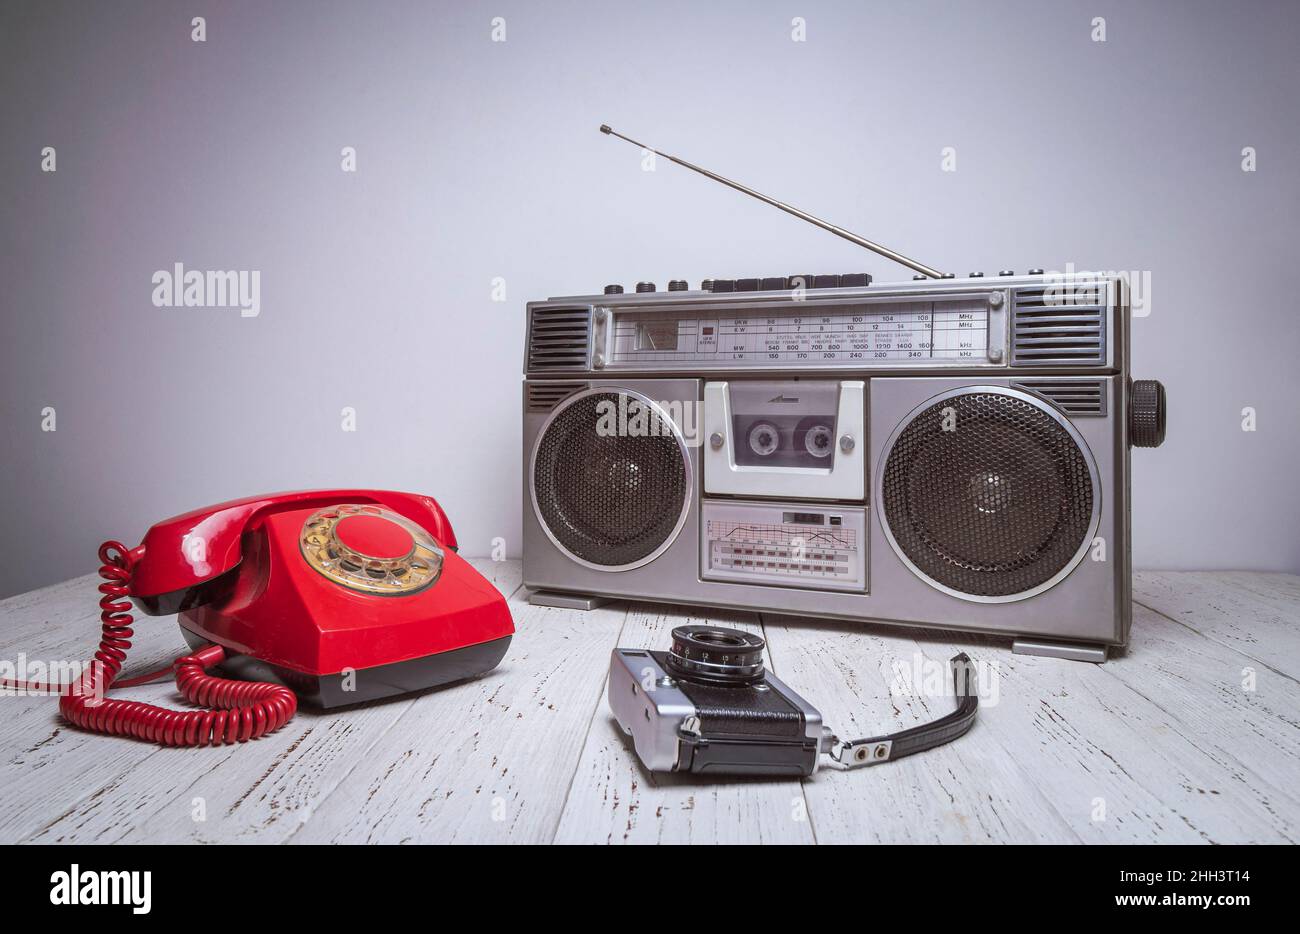 Un vecchio registratore a nastro retrò, telefono e macchina fotografica sono su un tavolo di legno. Foto vecchio stile vintage filtrata. Foto Stock